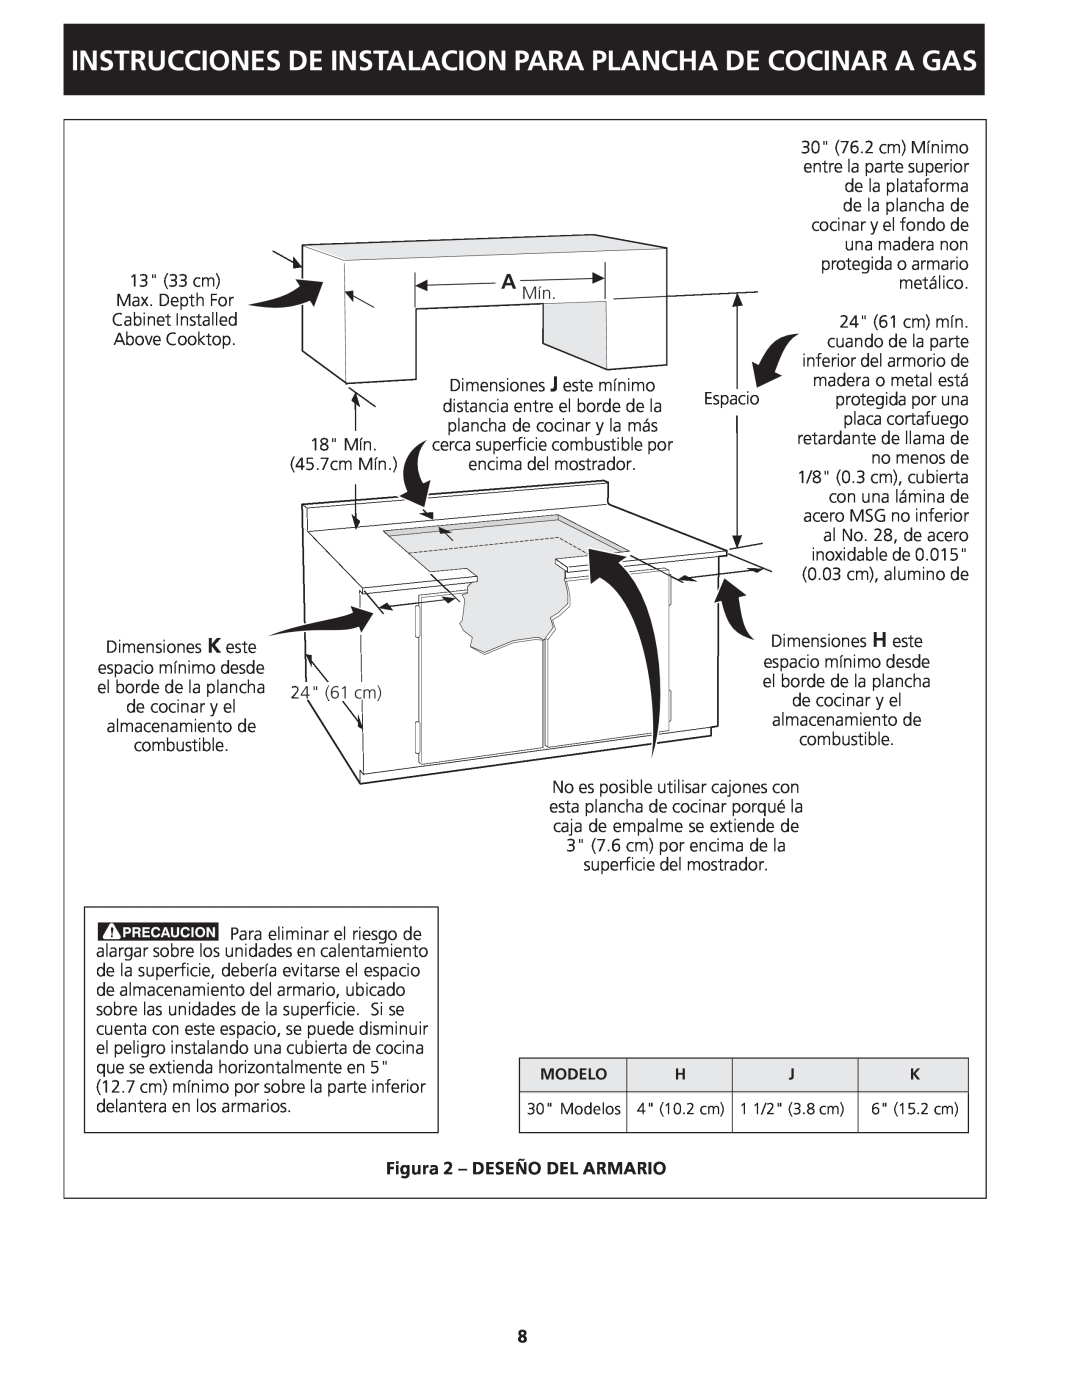 Frigidaire 318201451 dimensions Instrucciones De Instalacion Para Plancha De Cocinar A Gas, Figura 2 - DESEÑO DEL ARMARIO 